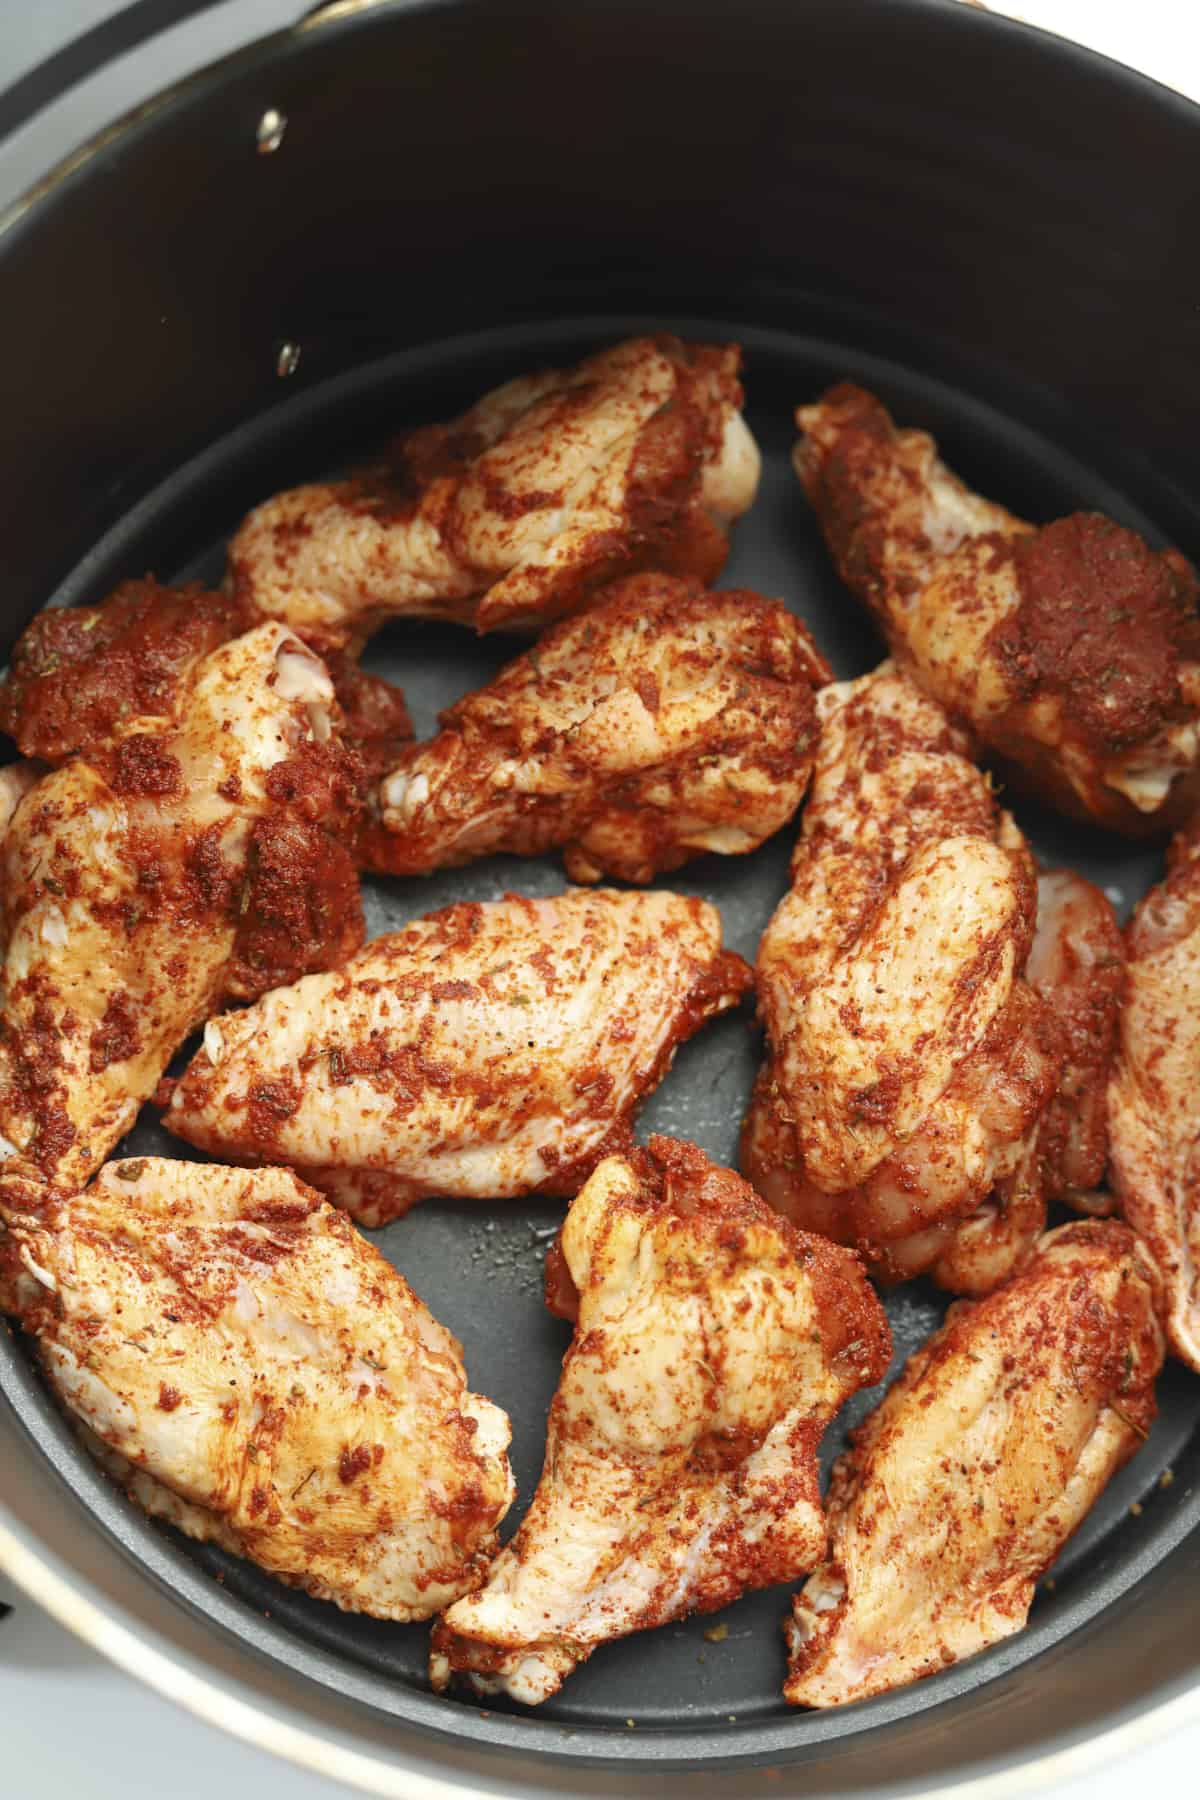 raw seasoned chicken wings in an air fryer